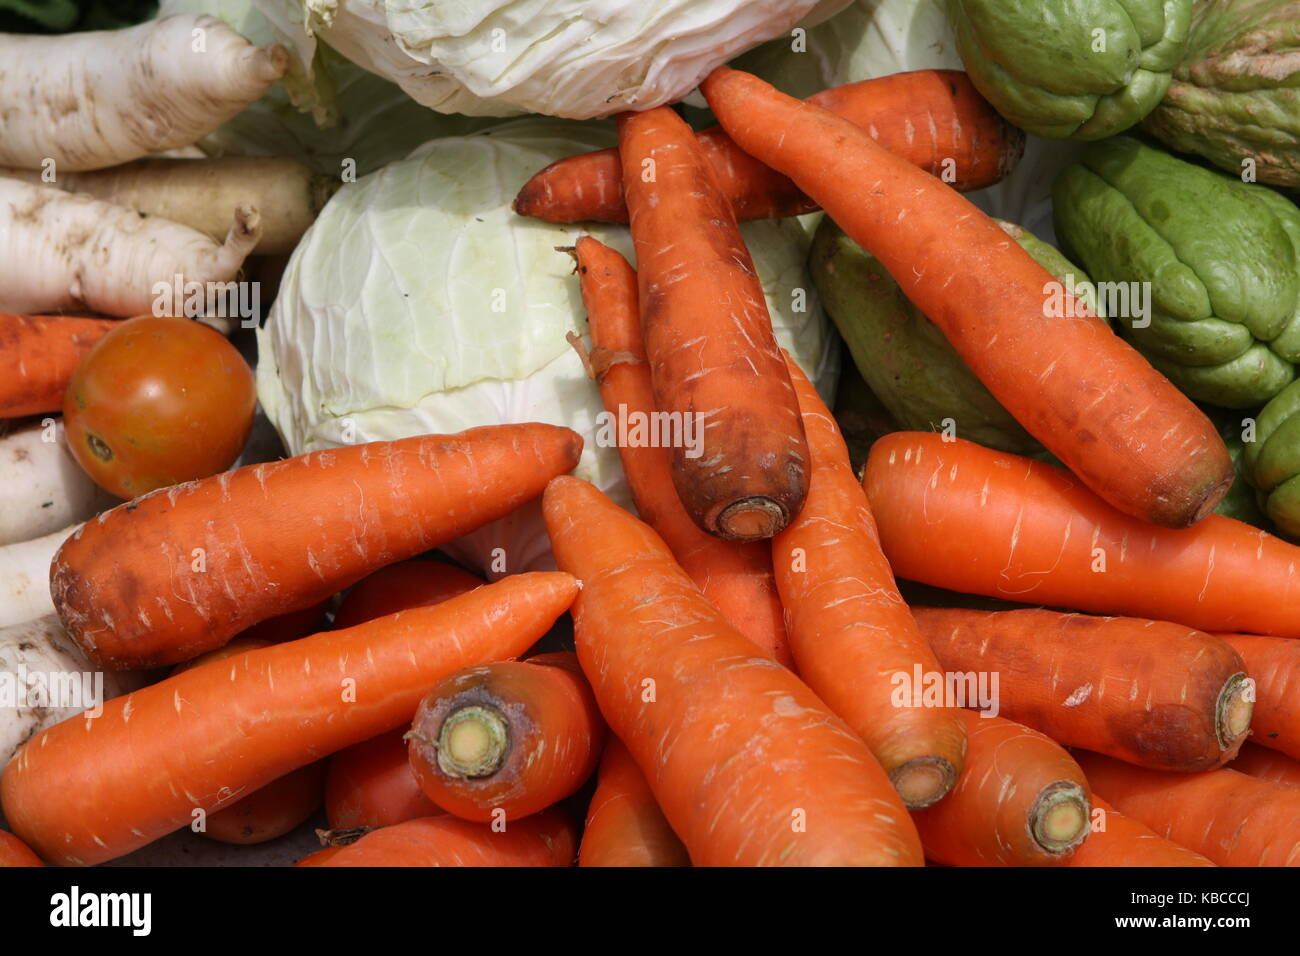 Gemüse und Karotten auf einem Marktstand Foto Stock